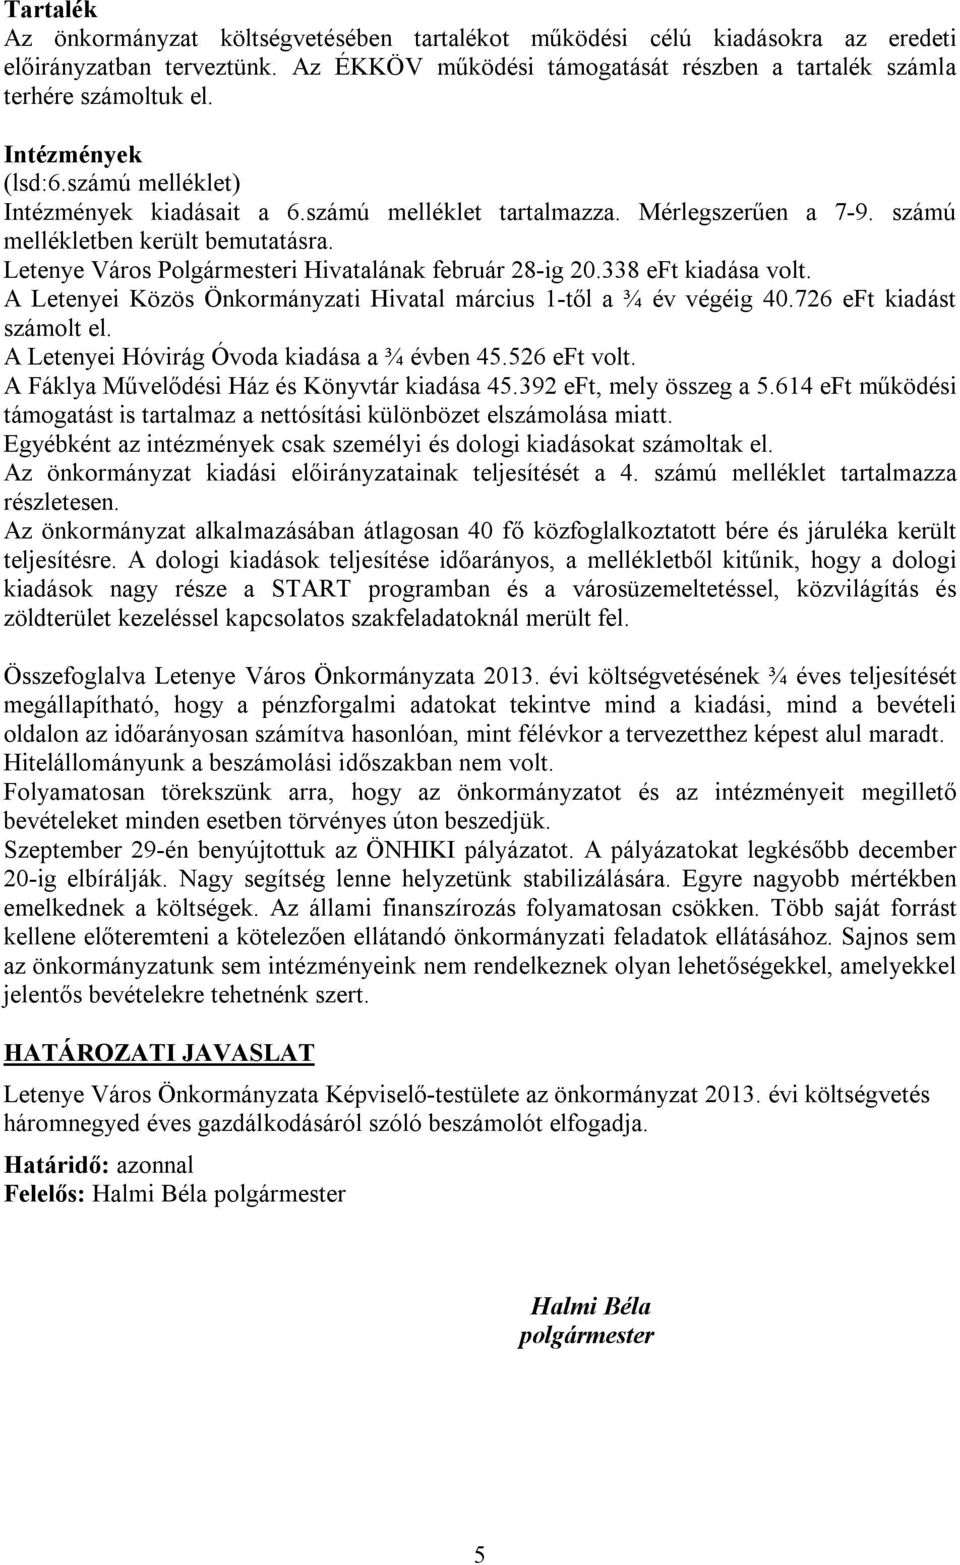 Letenye Város Polgármesteri Hivatalának február 28-ig 20.338 eft kiadása volt. A Letenyei Közös Önkormányzati Hivatal március 1-től a ¾ év végéig 40.726 eft kiadást számolt el.